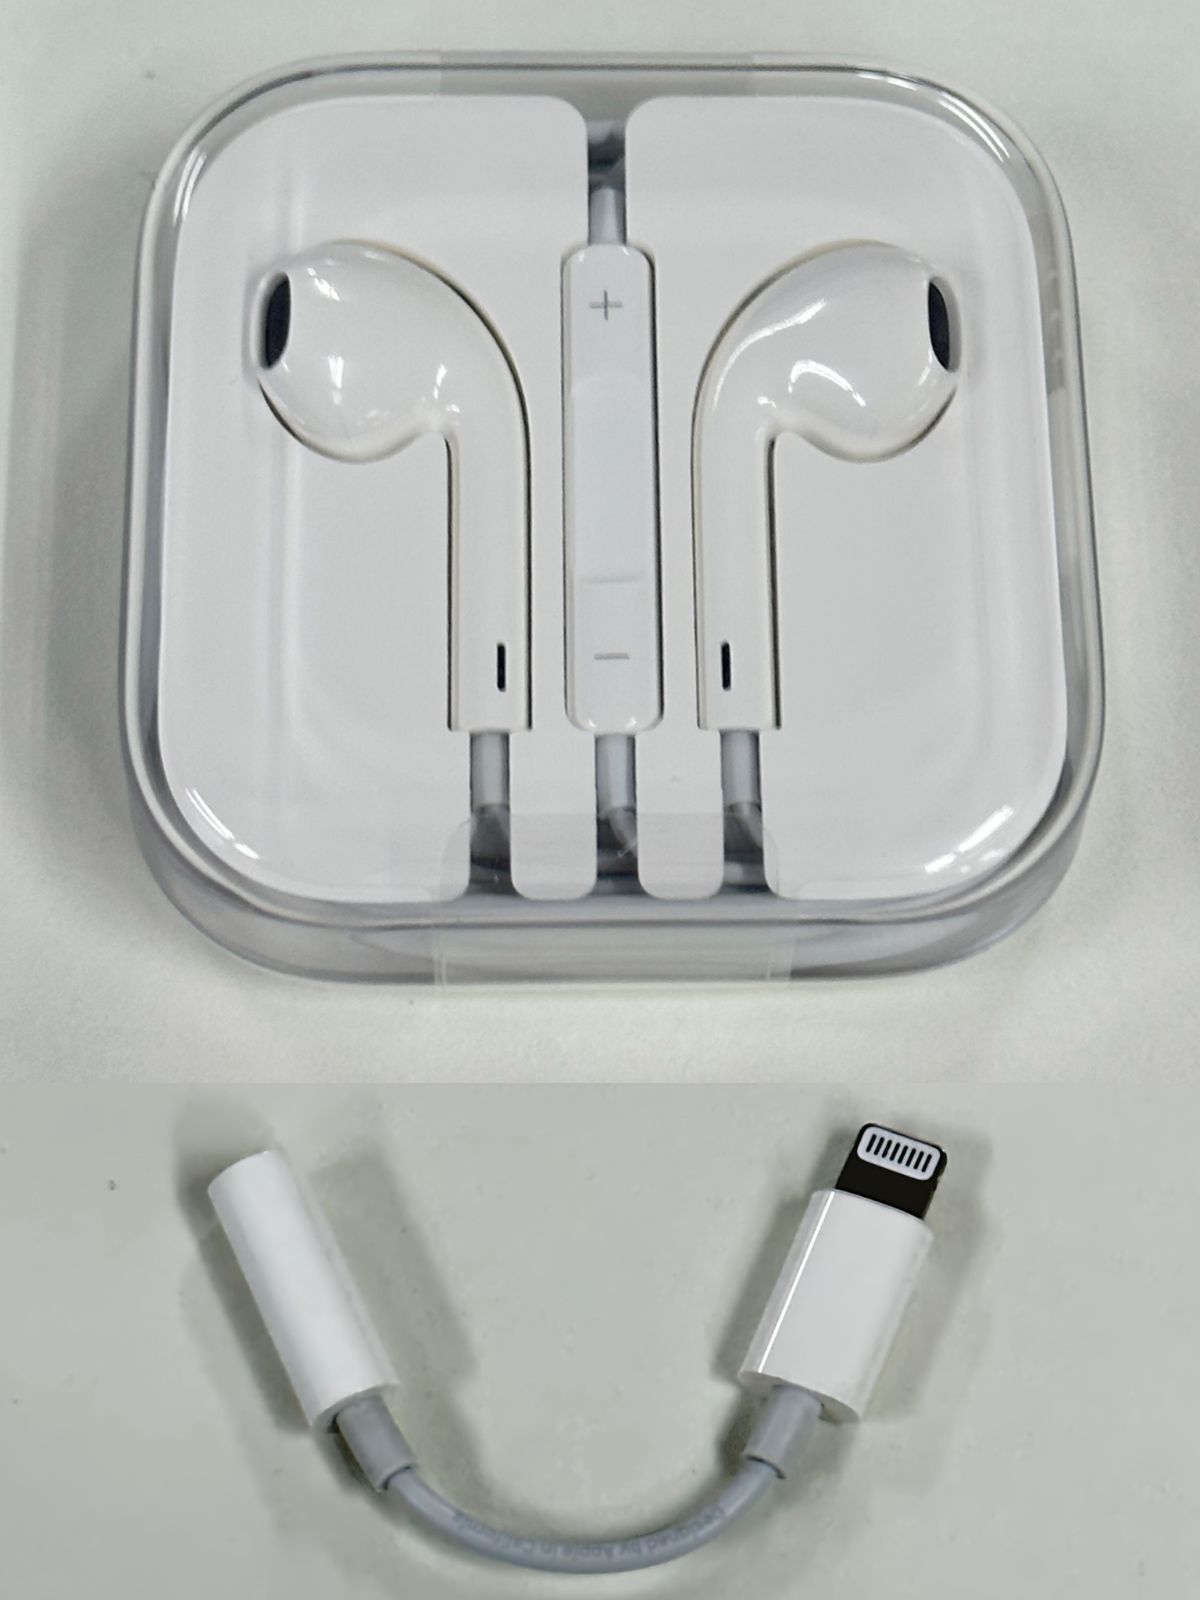 大注目】 iPhone Apple 3.5mmイヤホン変換アダプター